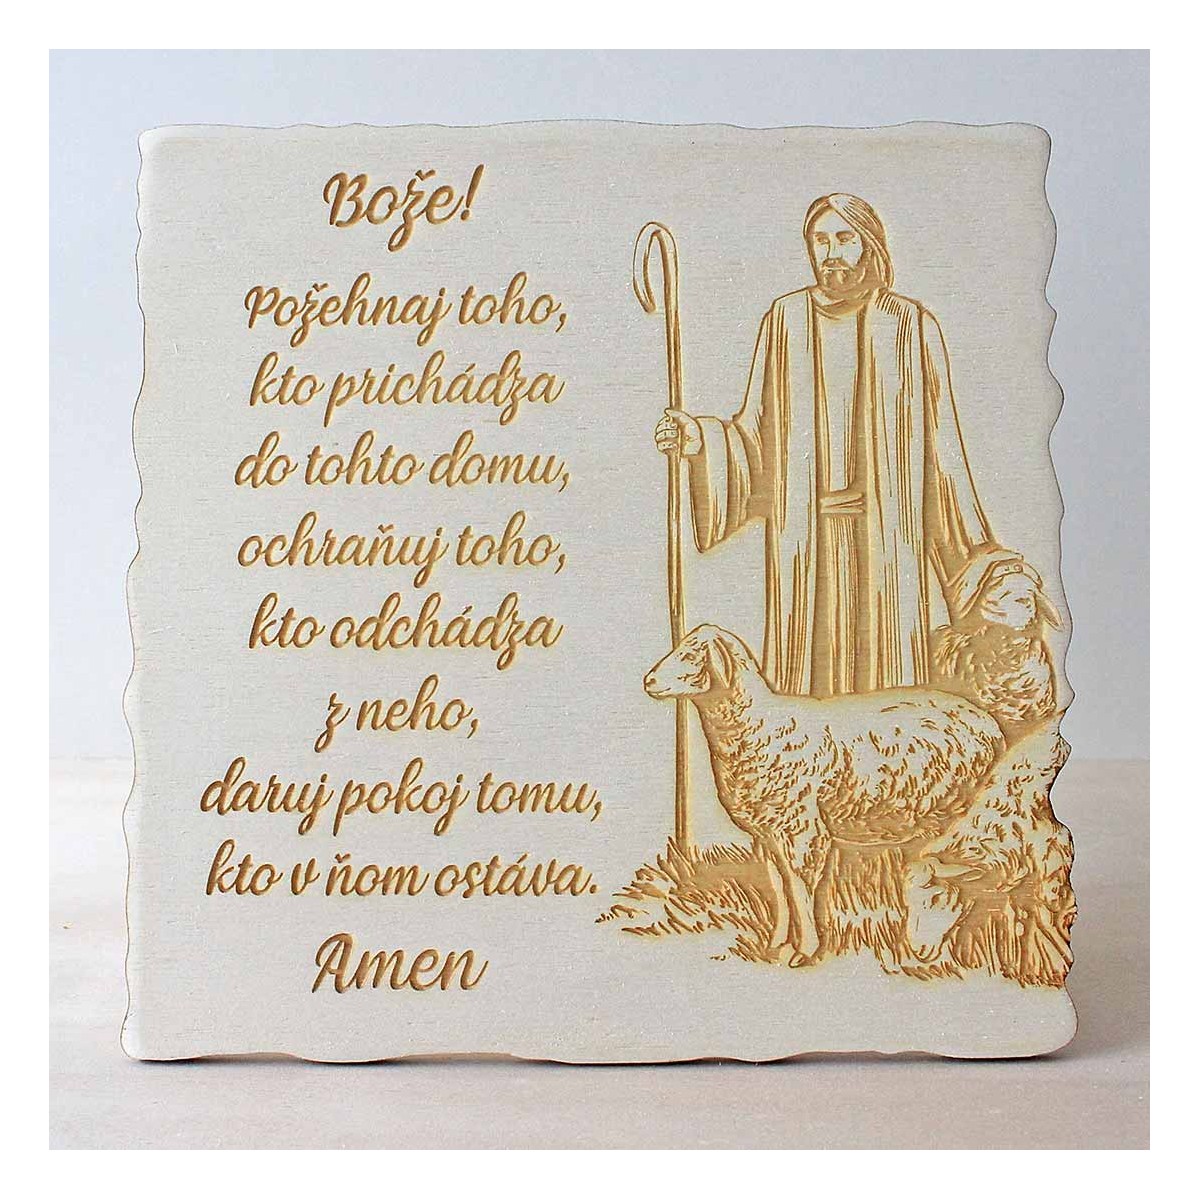 Požehnanie domu, gravírovaná drevená tabuľka v stojacej verzii s krásnou ilustráciou Ježiša ako pastiera